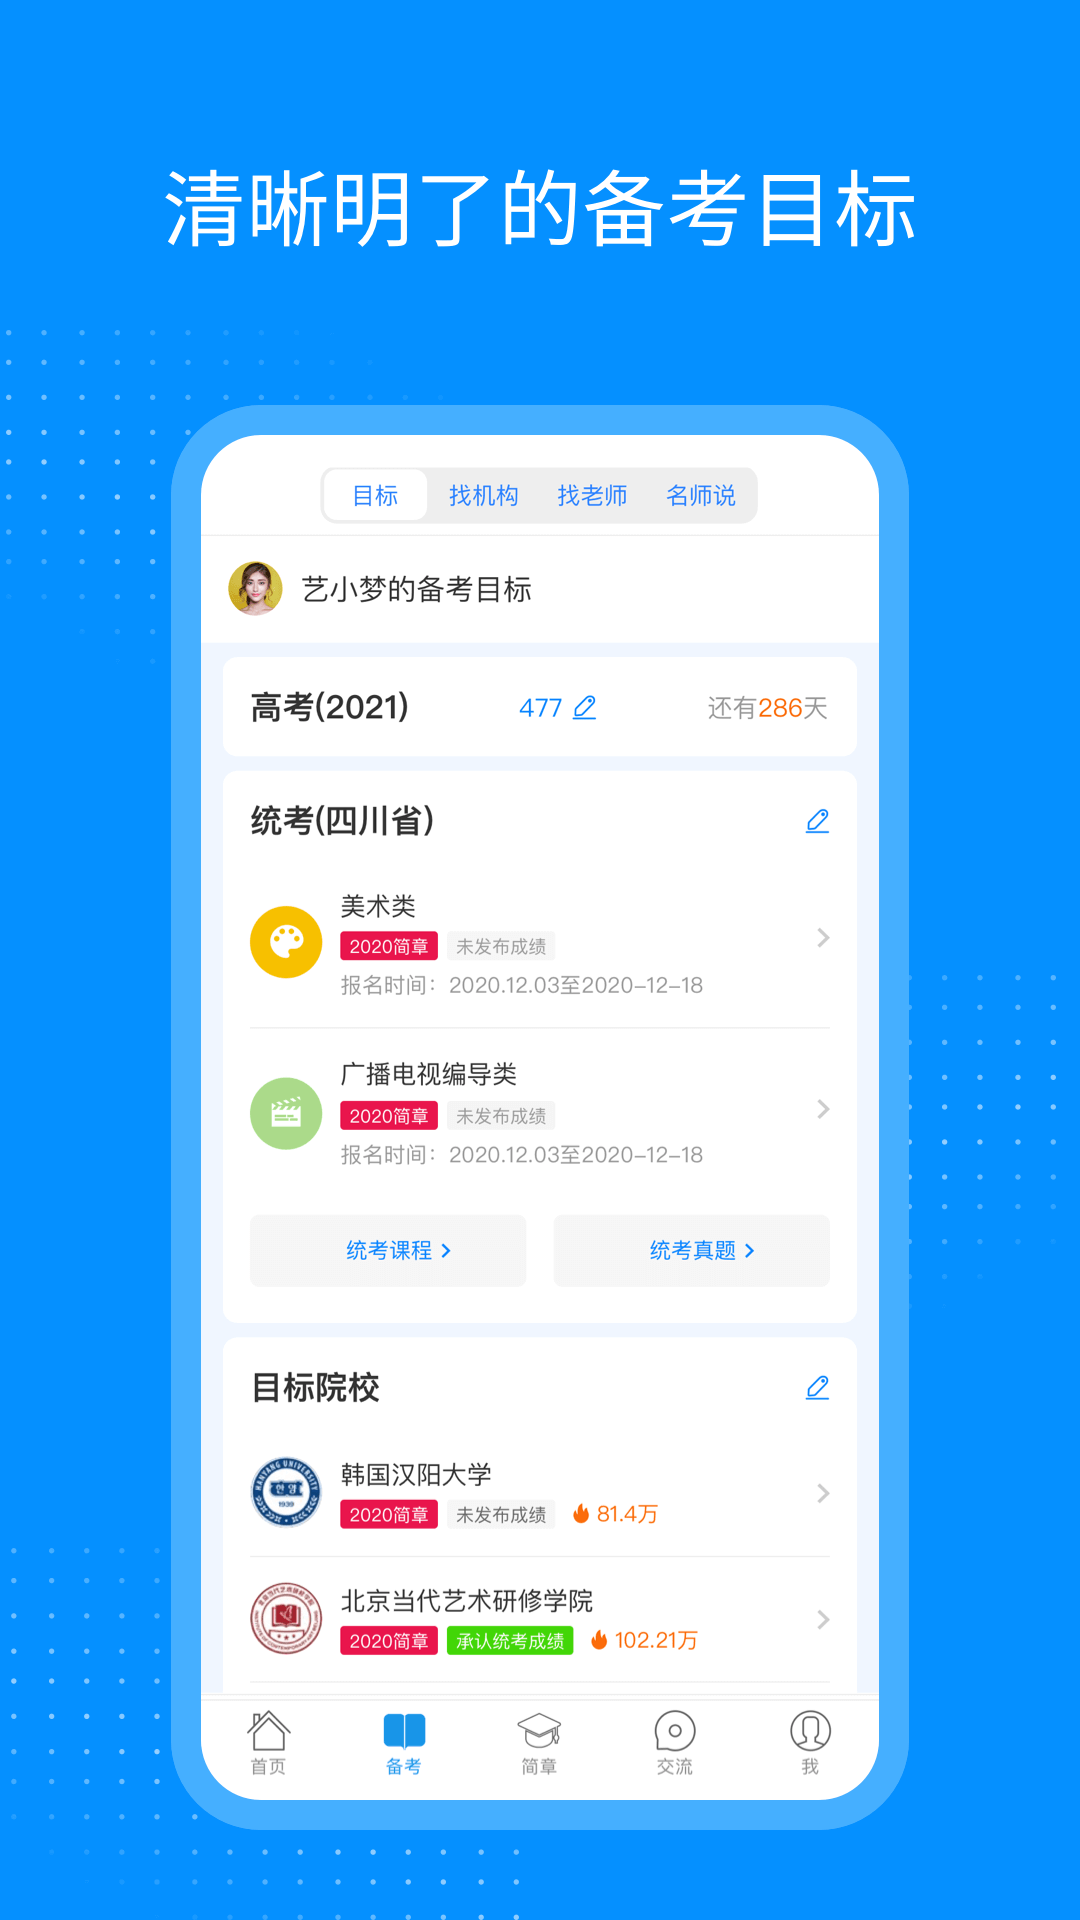 艺考生app